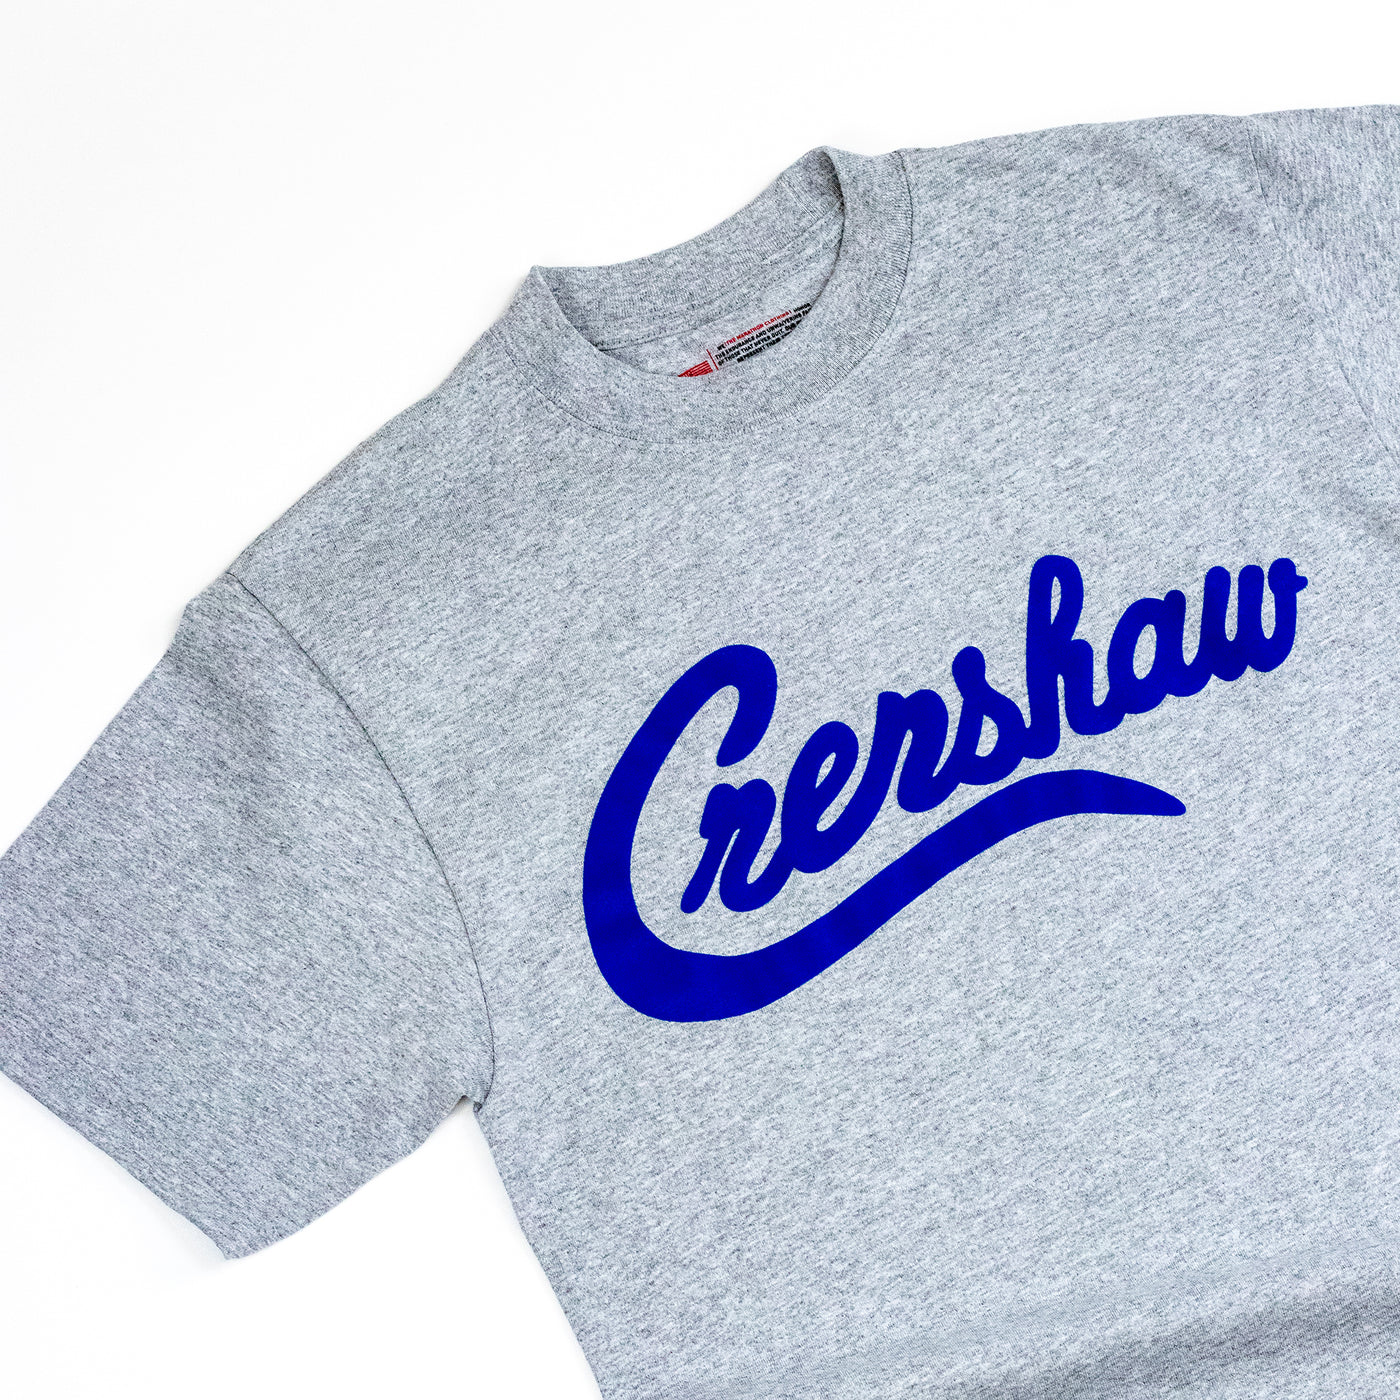 Crenshaw T-Shirt - Heather Grey/Royal - Detail